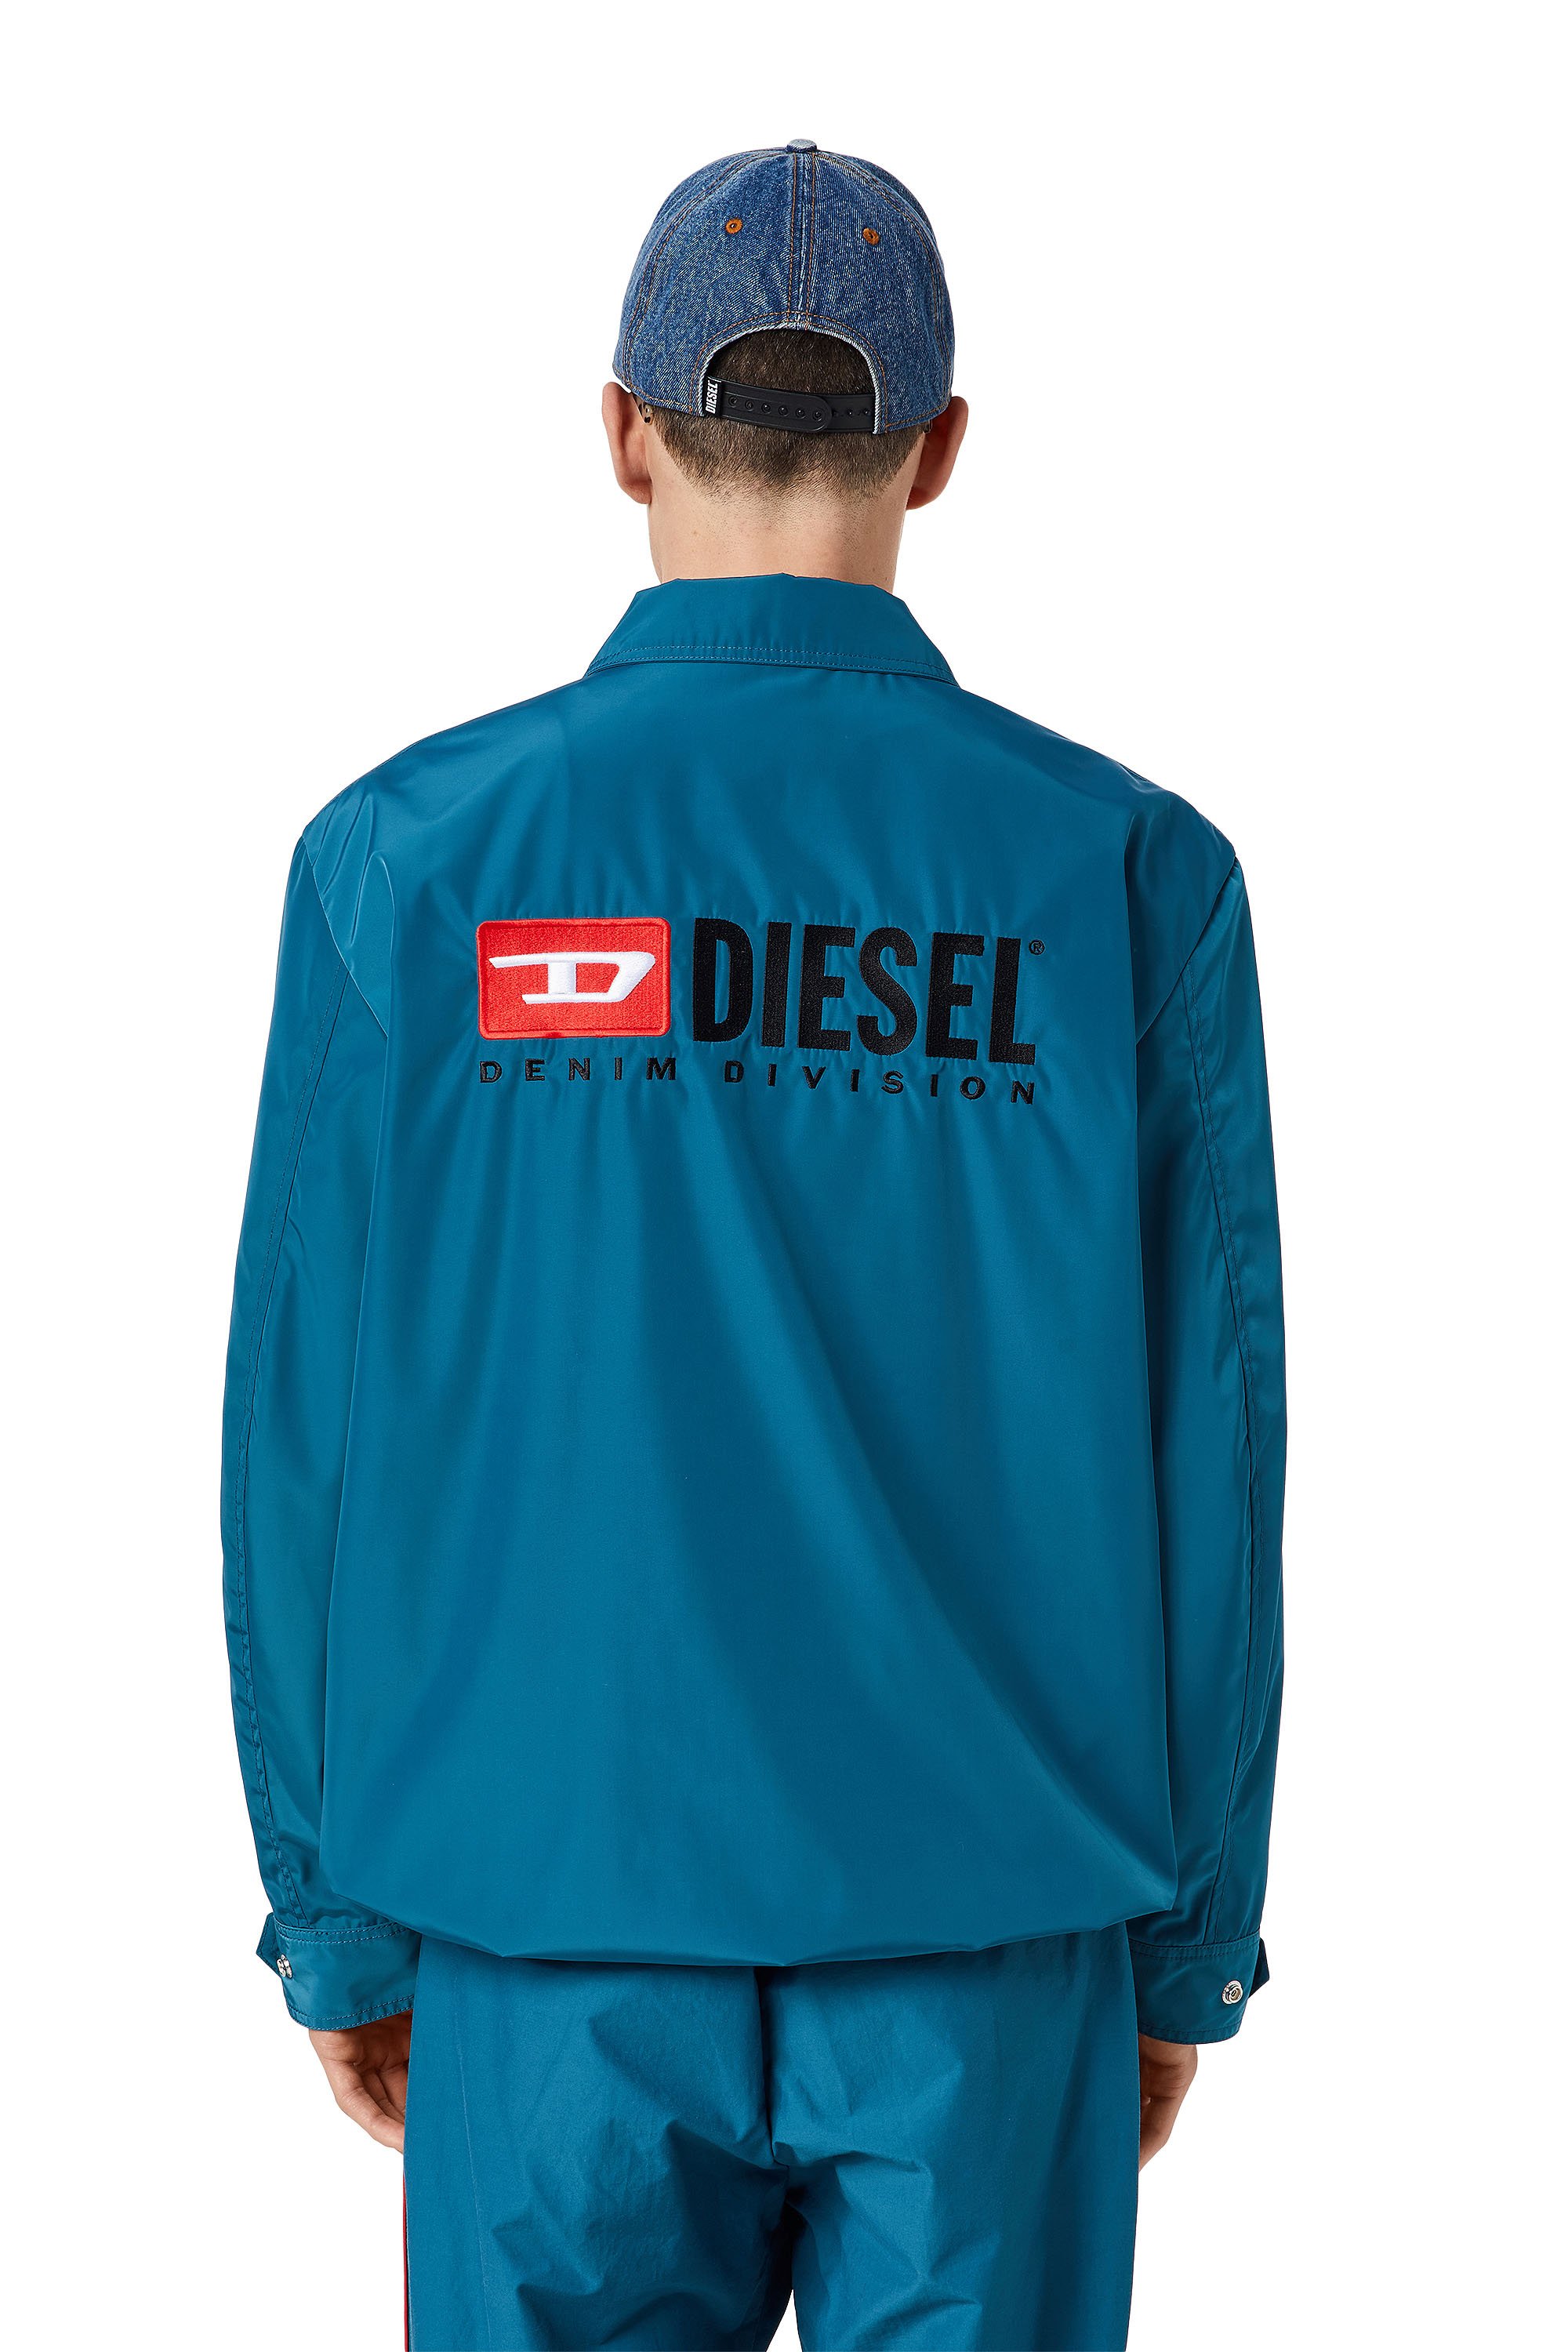 Diesel - J-COAL-NP, Blu - Image 3